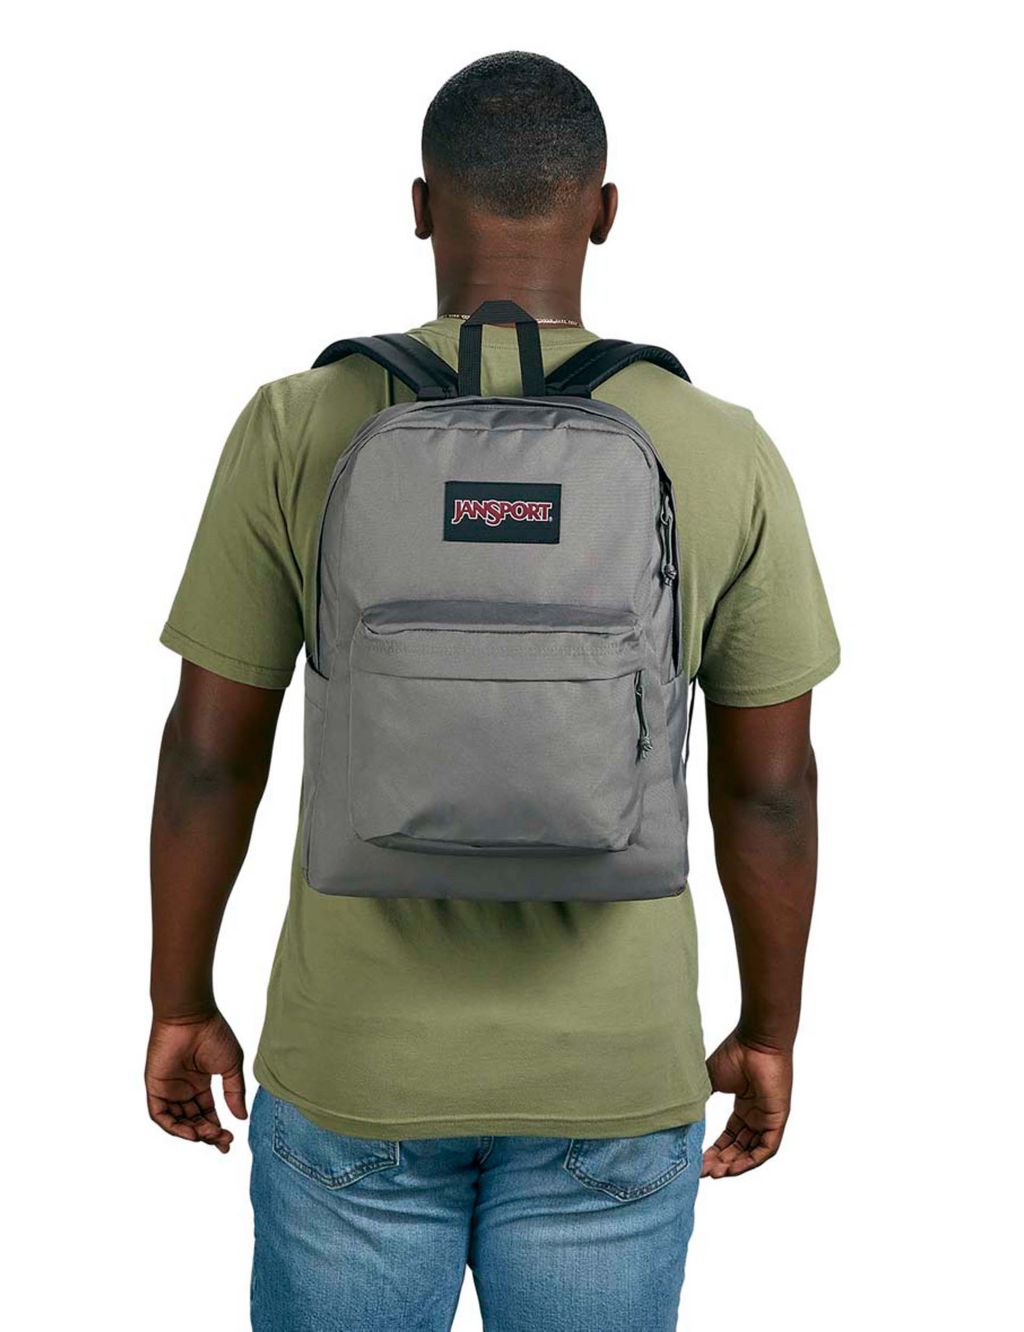 SuperBreak Plus Backpack 5 of 7